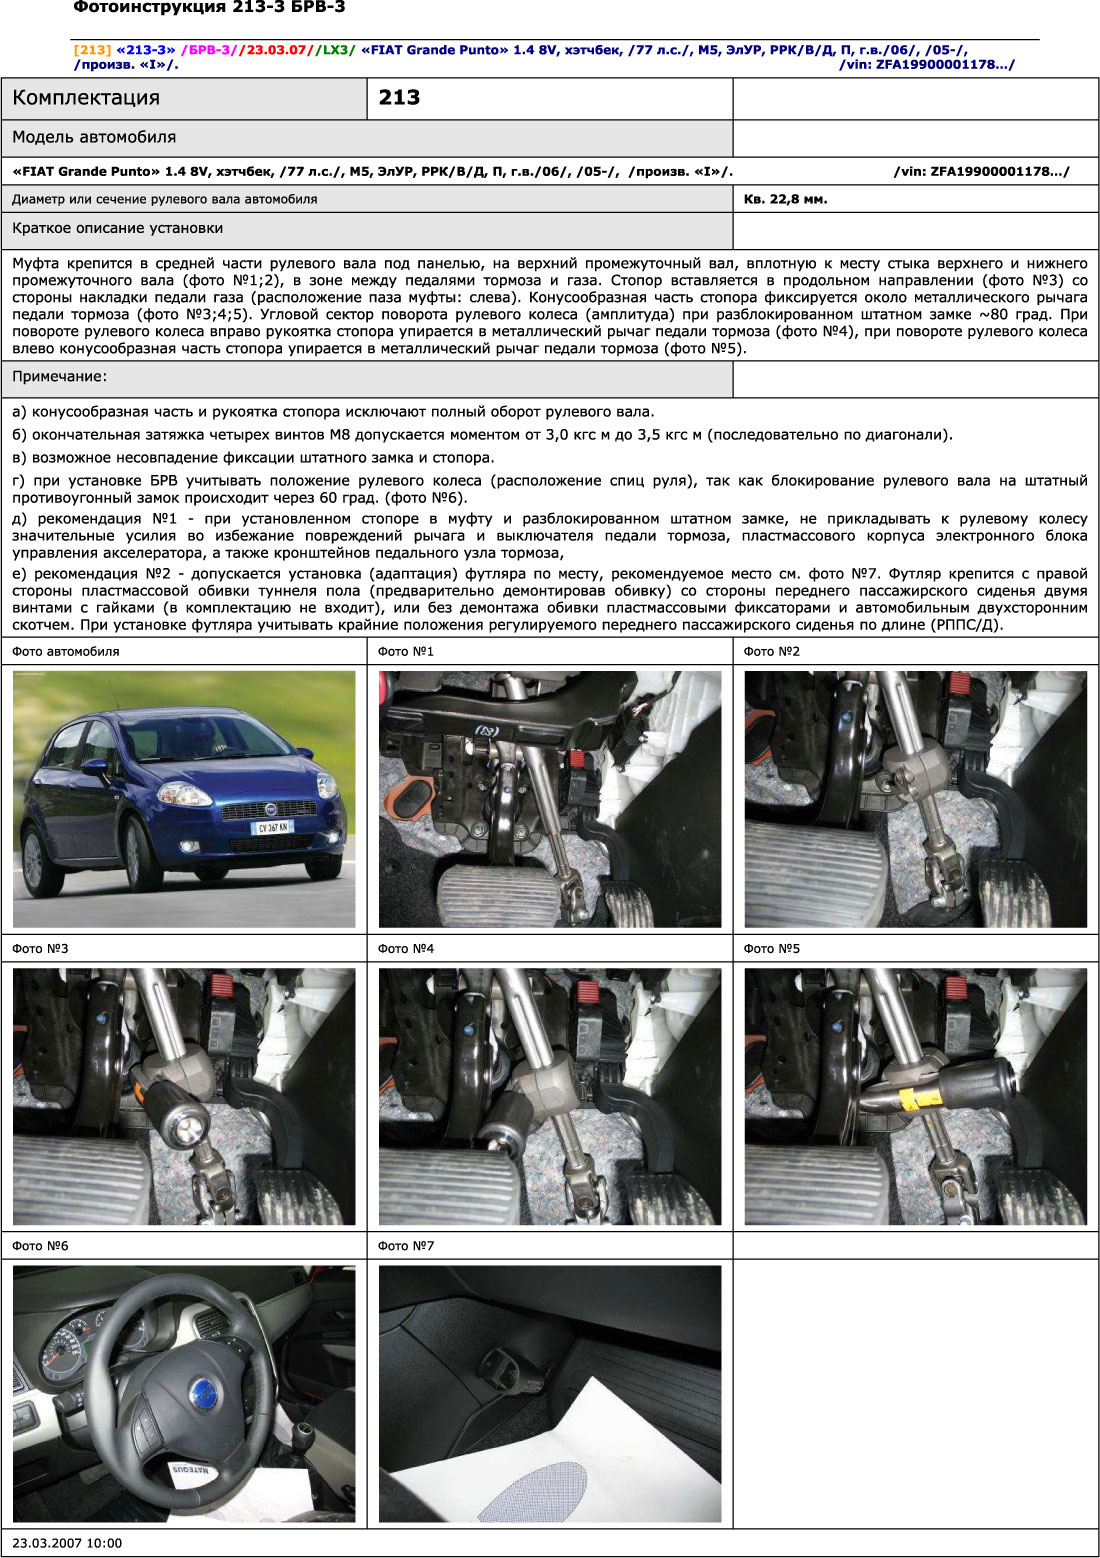 Блокиратор рулевого вала для FIAT GRANDE PUNTO /2005-/ ЭлУР Рулевой вал кв.22,8 - Гарант Блок Люкс 213.E